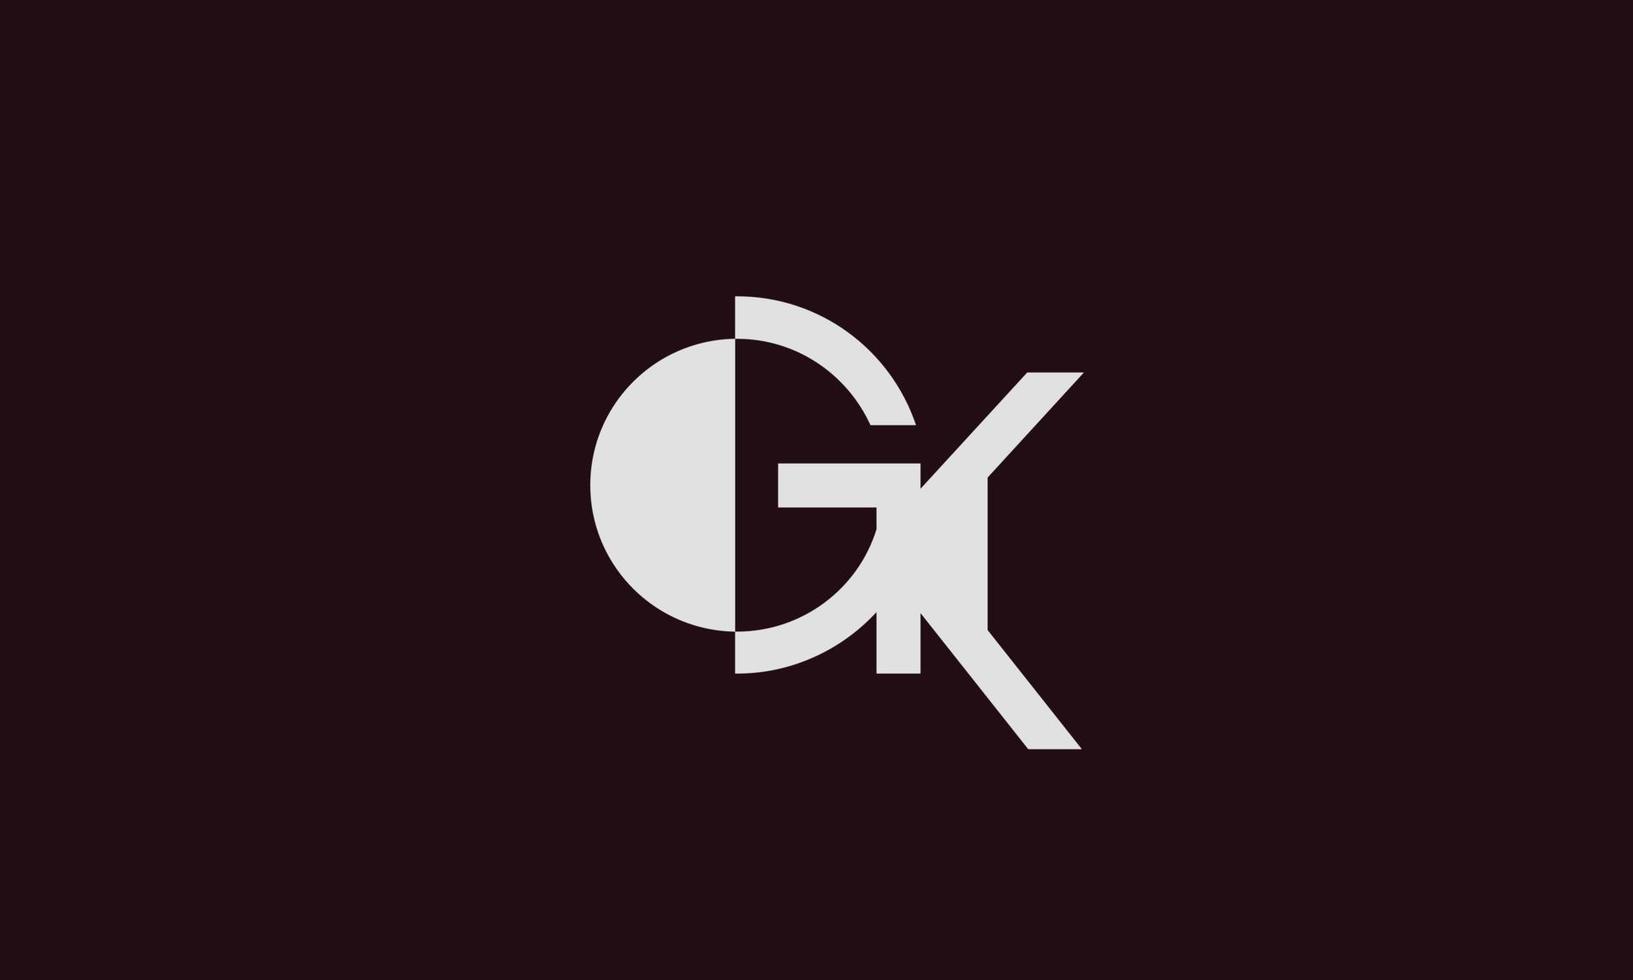 letras del alfabeto iniciales monograma logo gk, kg,g y k vector